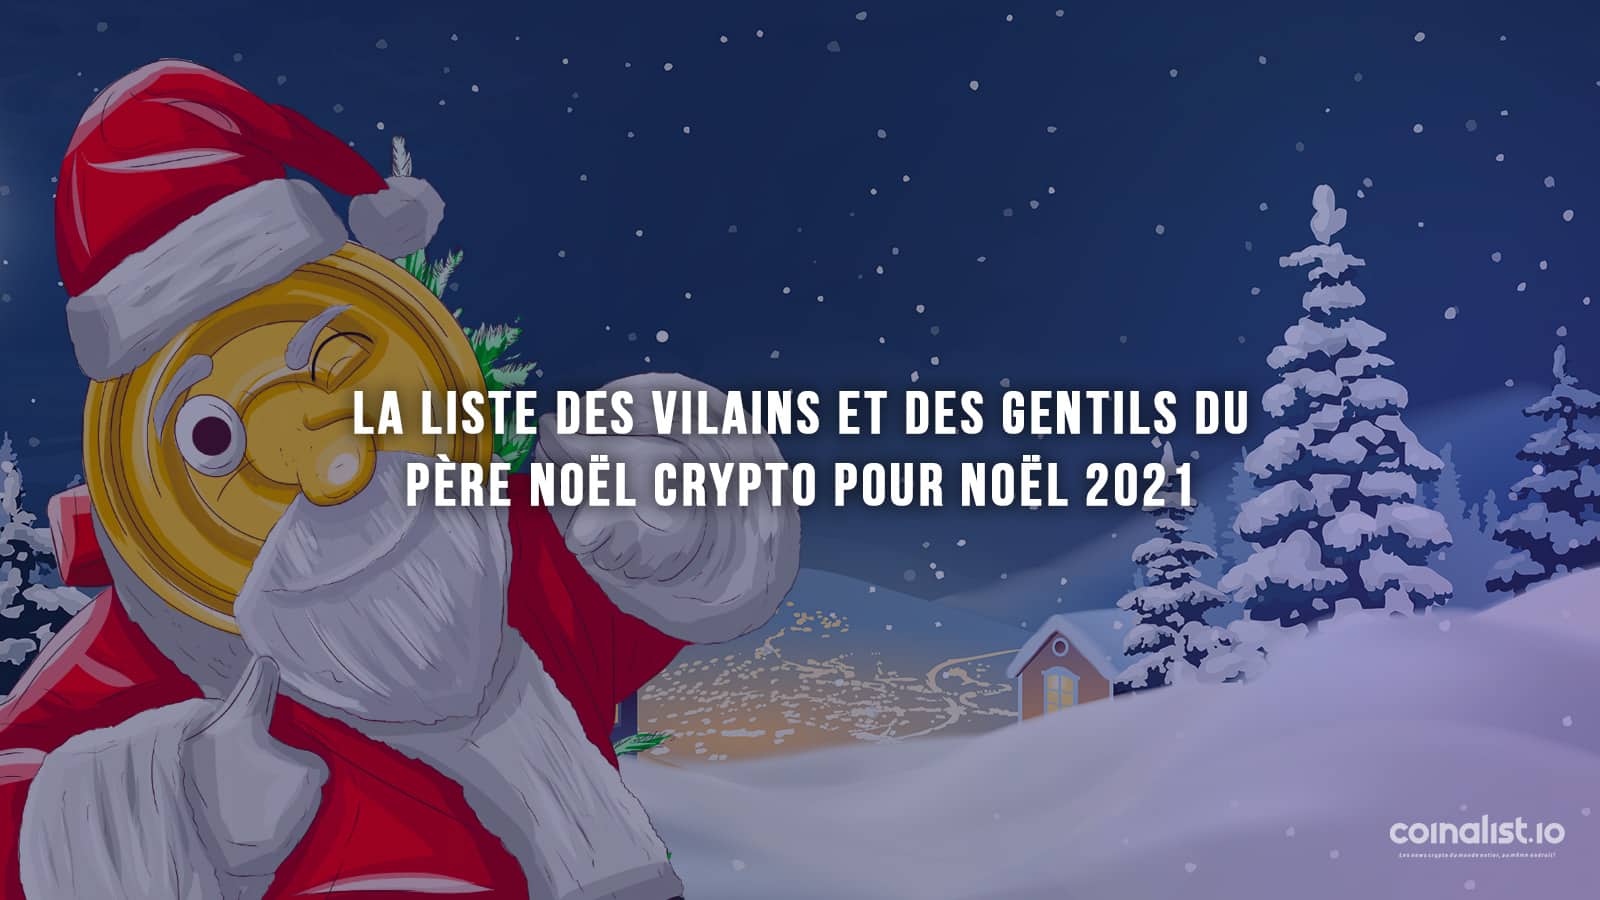 La Liste Des Vilains Et Gentils Du Père Noël Crypto Pour Noël 2021 - Noël